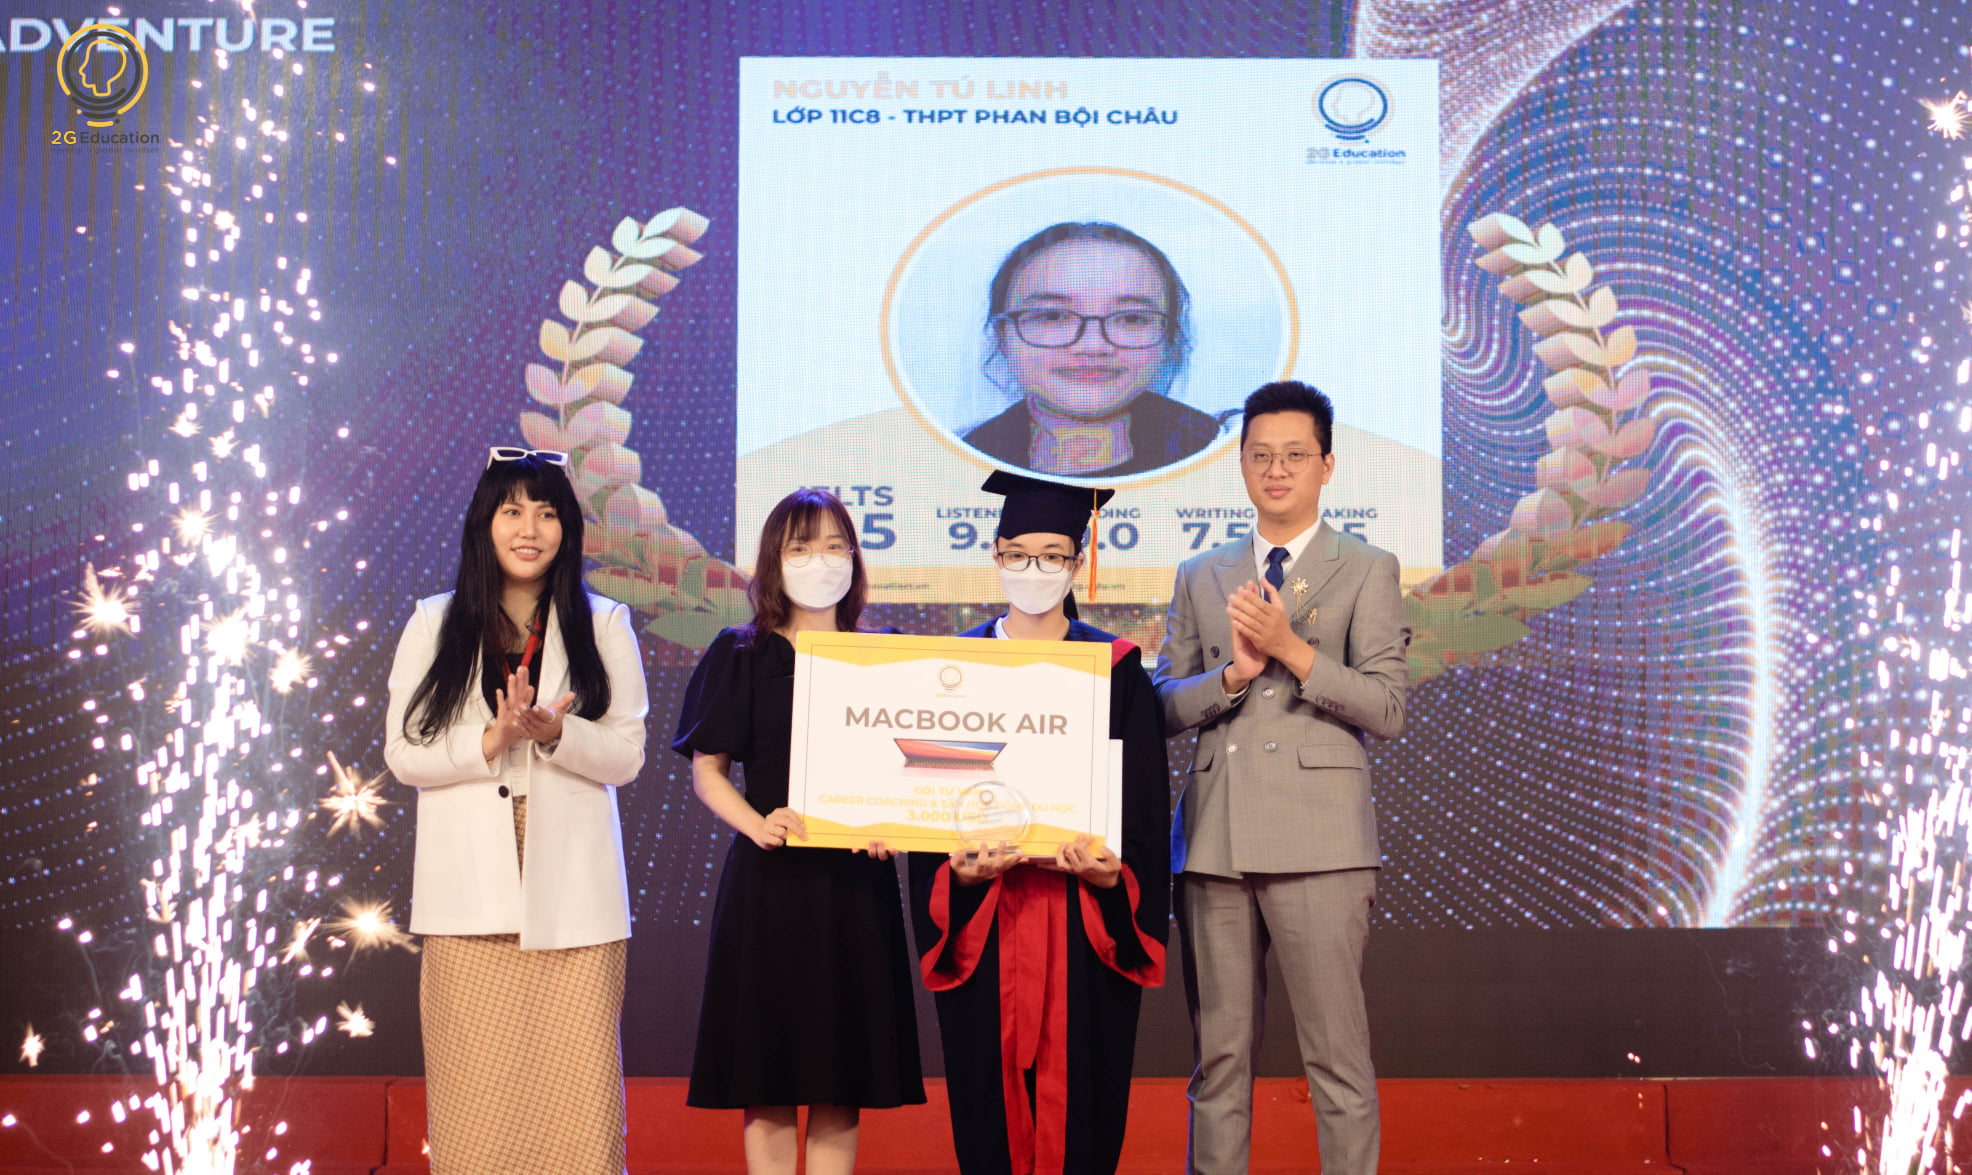 Với thành tích IELTS BAND 8.5, Nguyễn Tú Linh – Lớp 11C8, THPT chuyên Phan Bội Châu là học viên đầu tiên dành được chiếc Macbook Air & gói Tư vấn Career coaching & Săn học bổng du học trị giá 3.000 USD